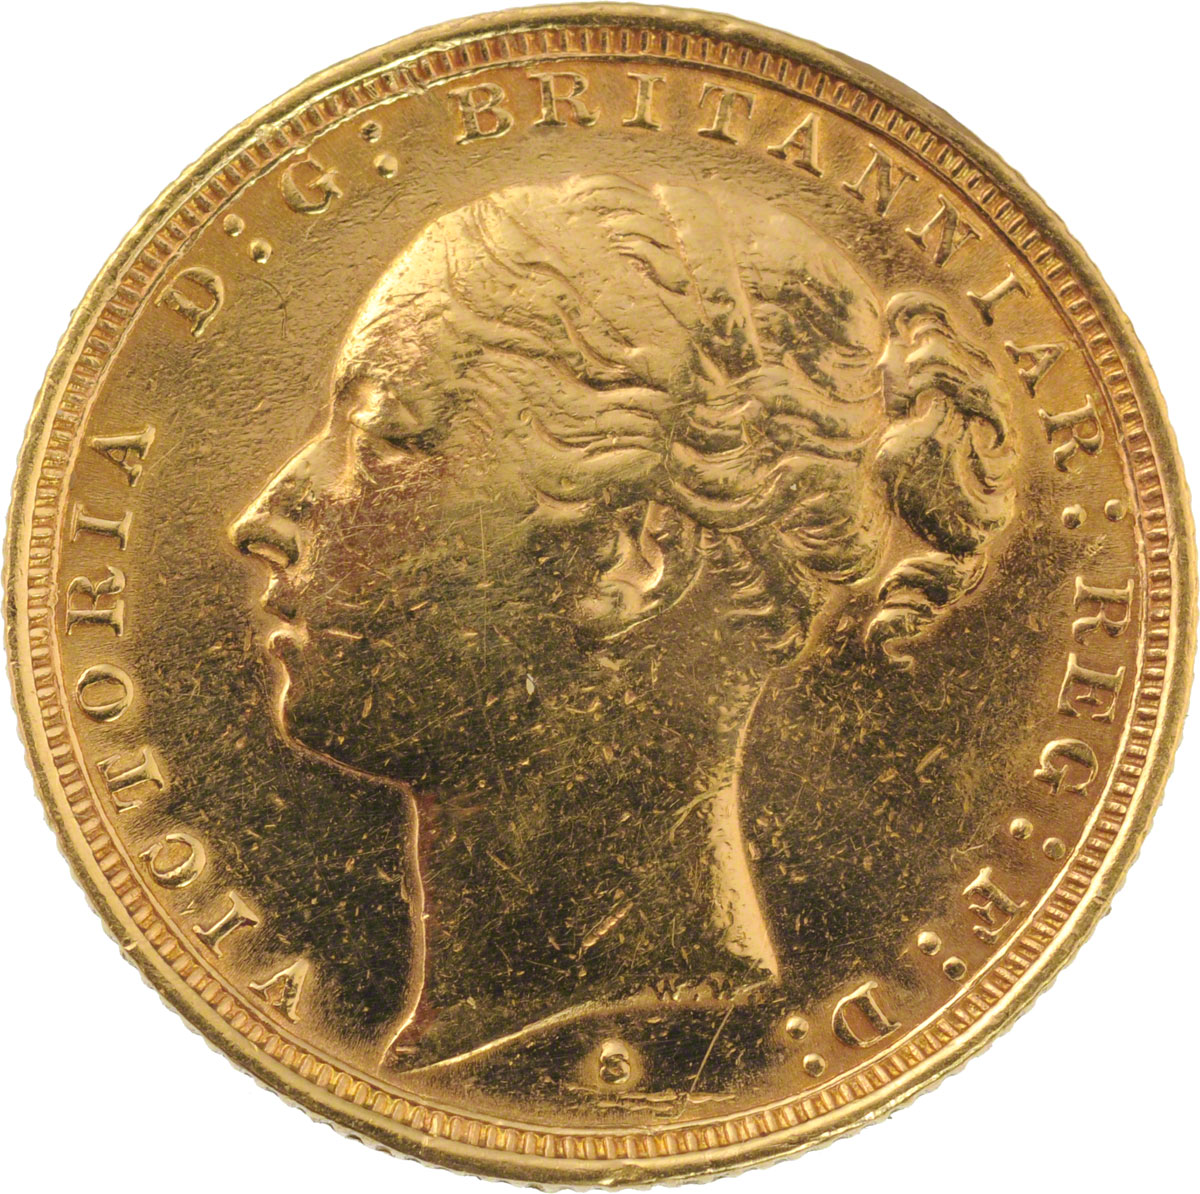 1883 Βικτώρια (Νομισματοκοπείο Σίδνεϊ)